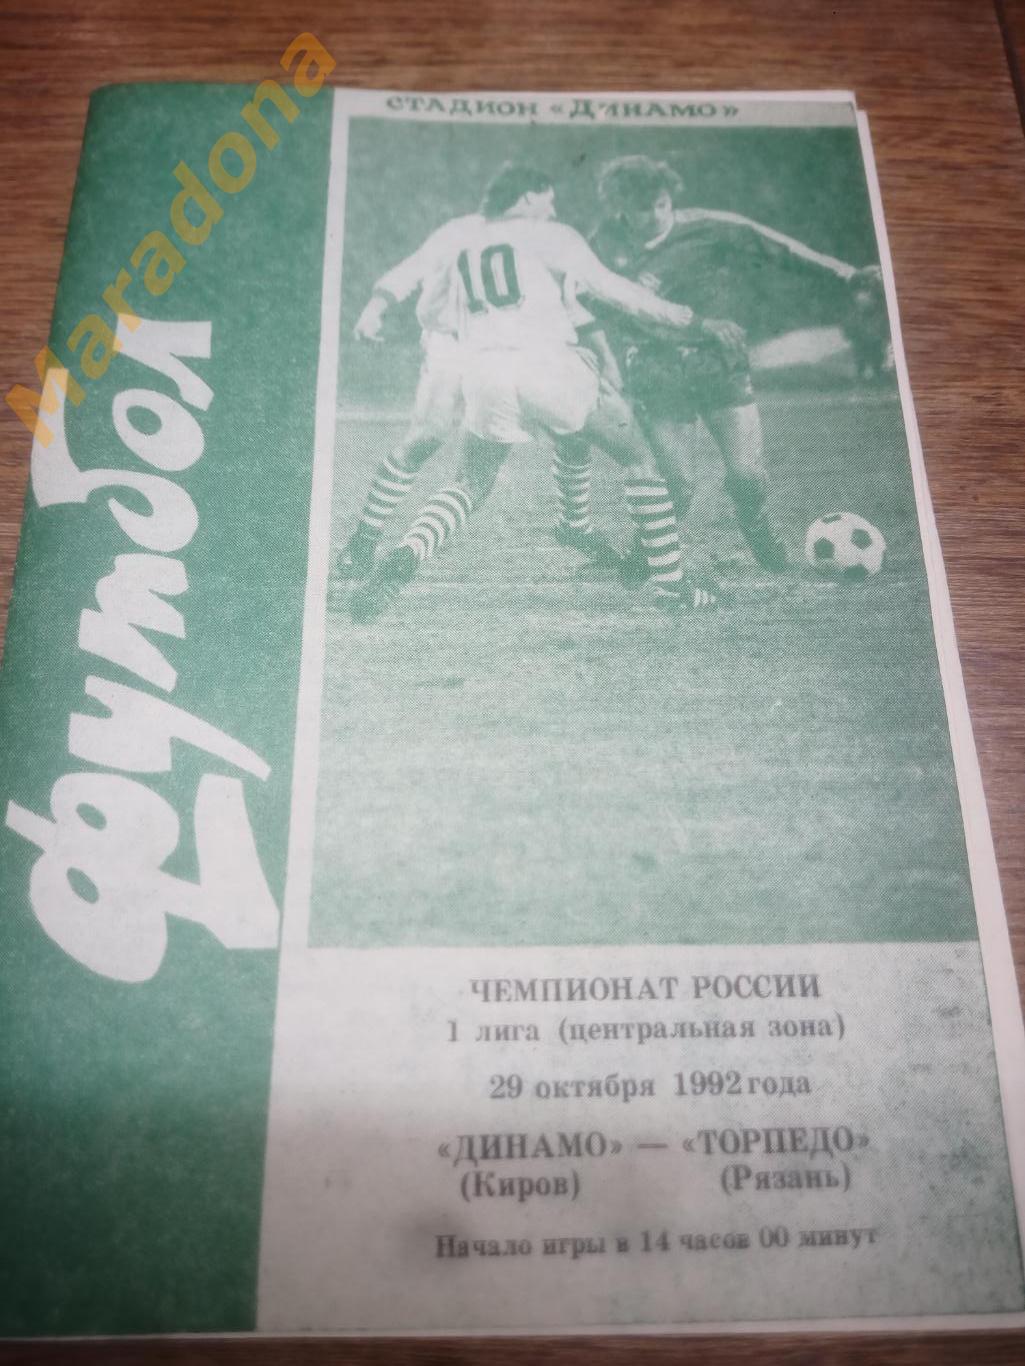 Динамо Киров - Торпедо Рязань 1992